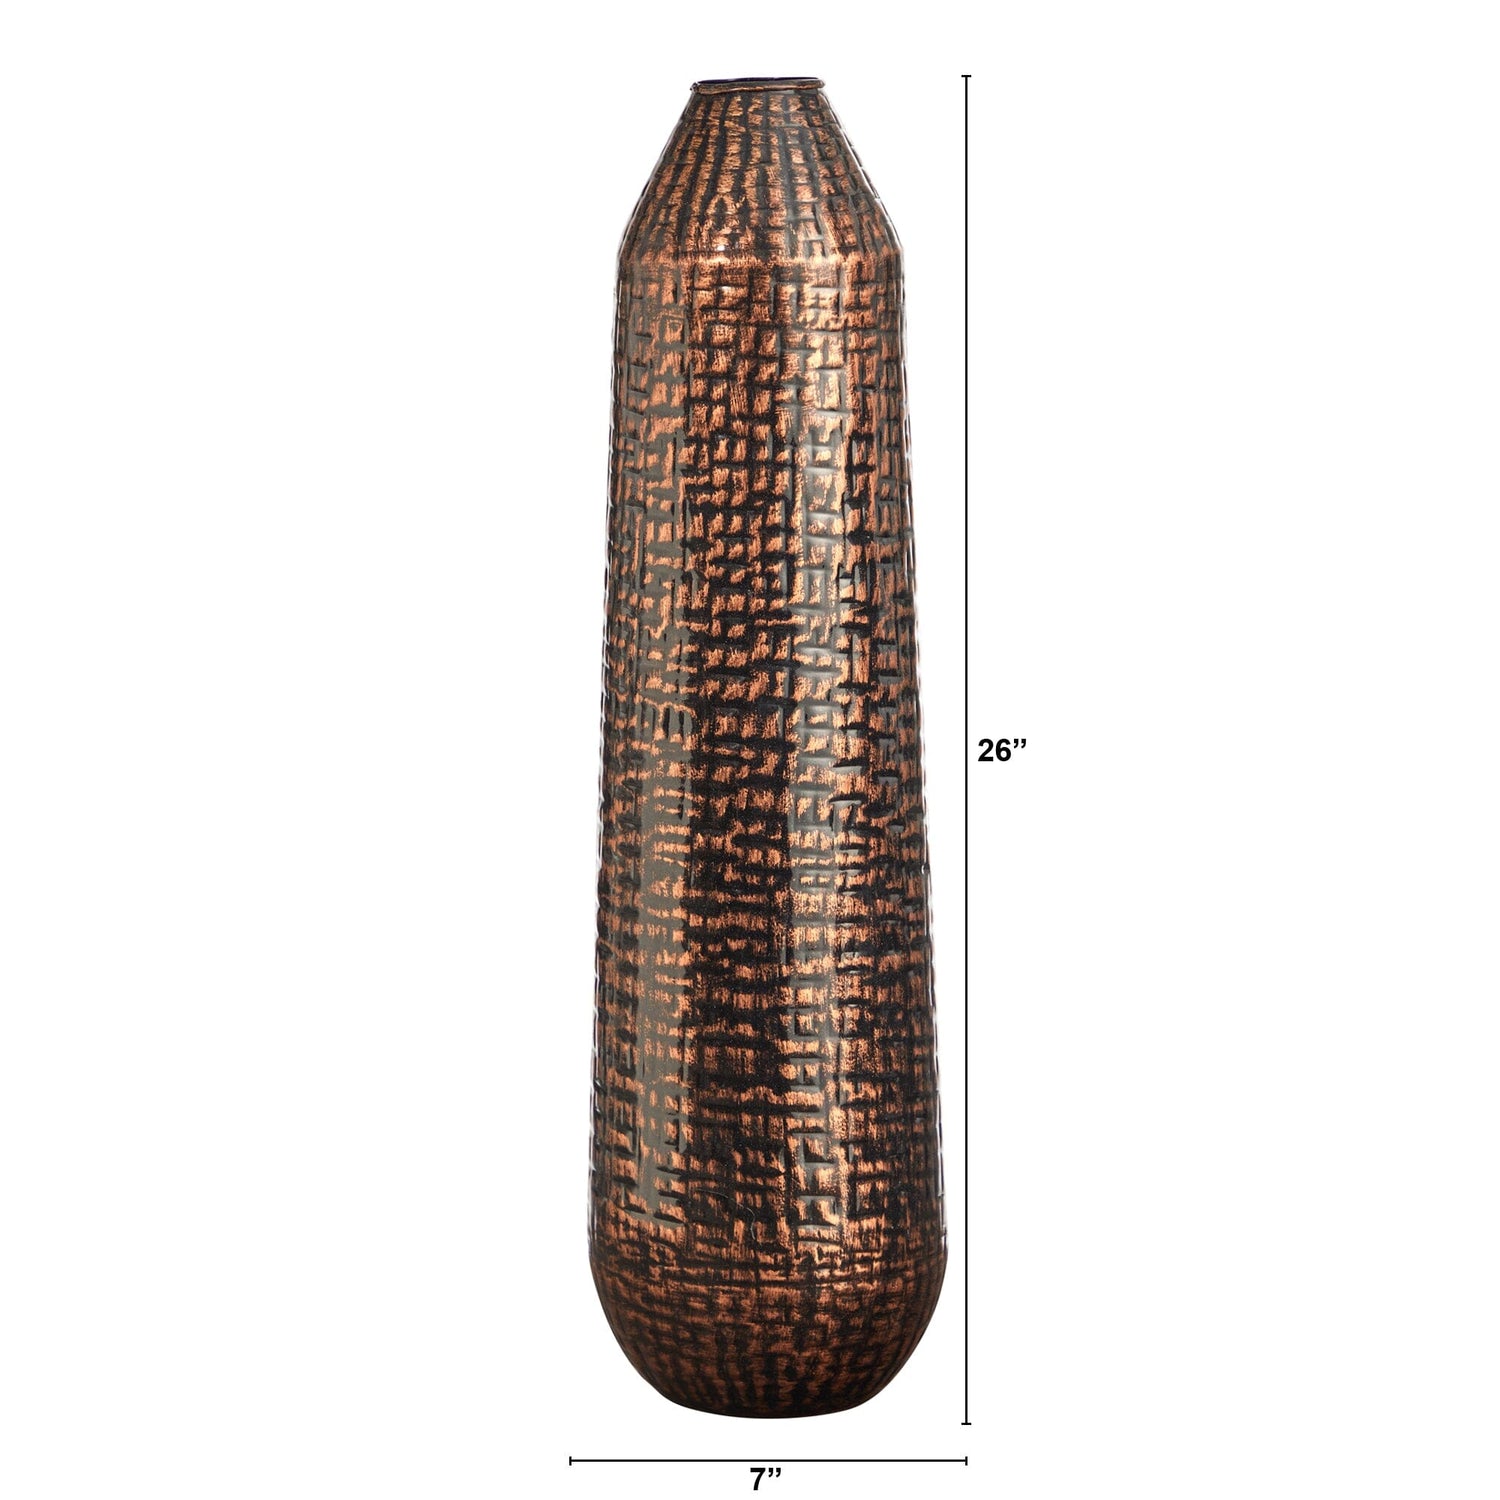 26” Tall Embossed Metal Tower Vase